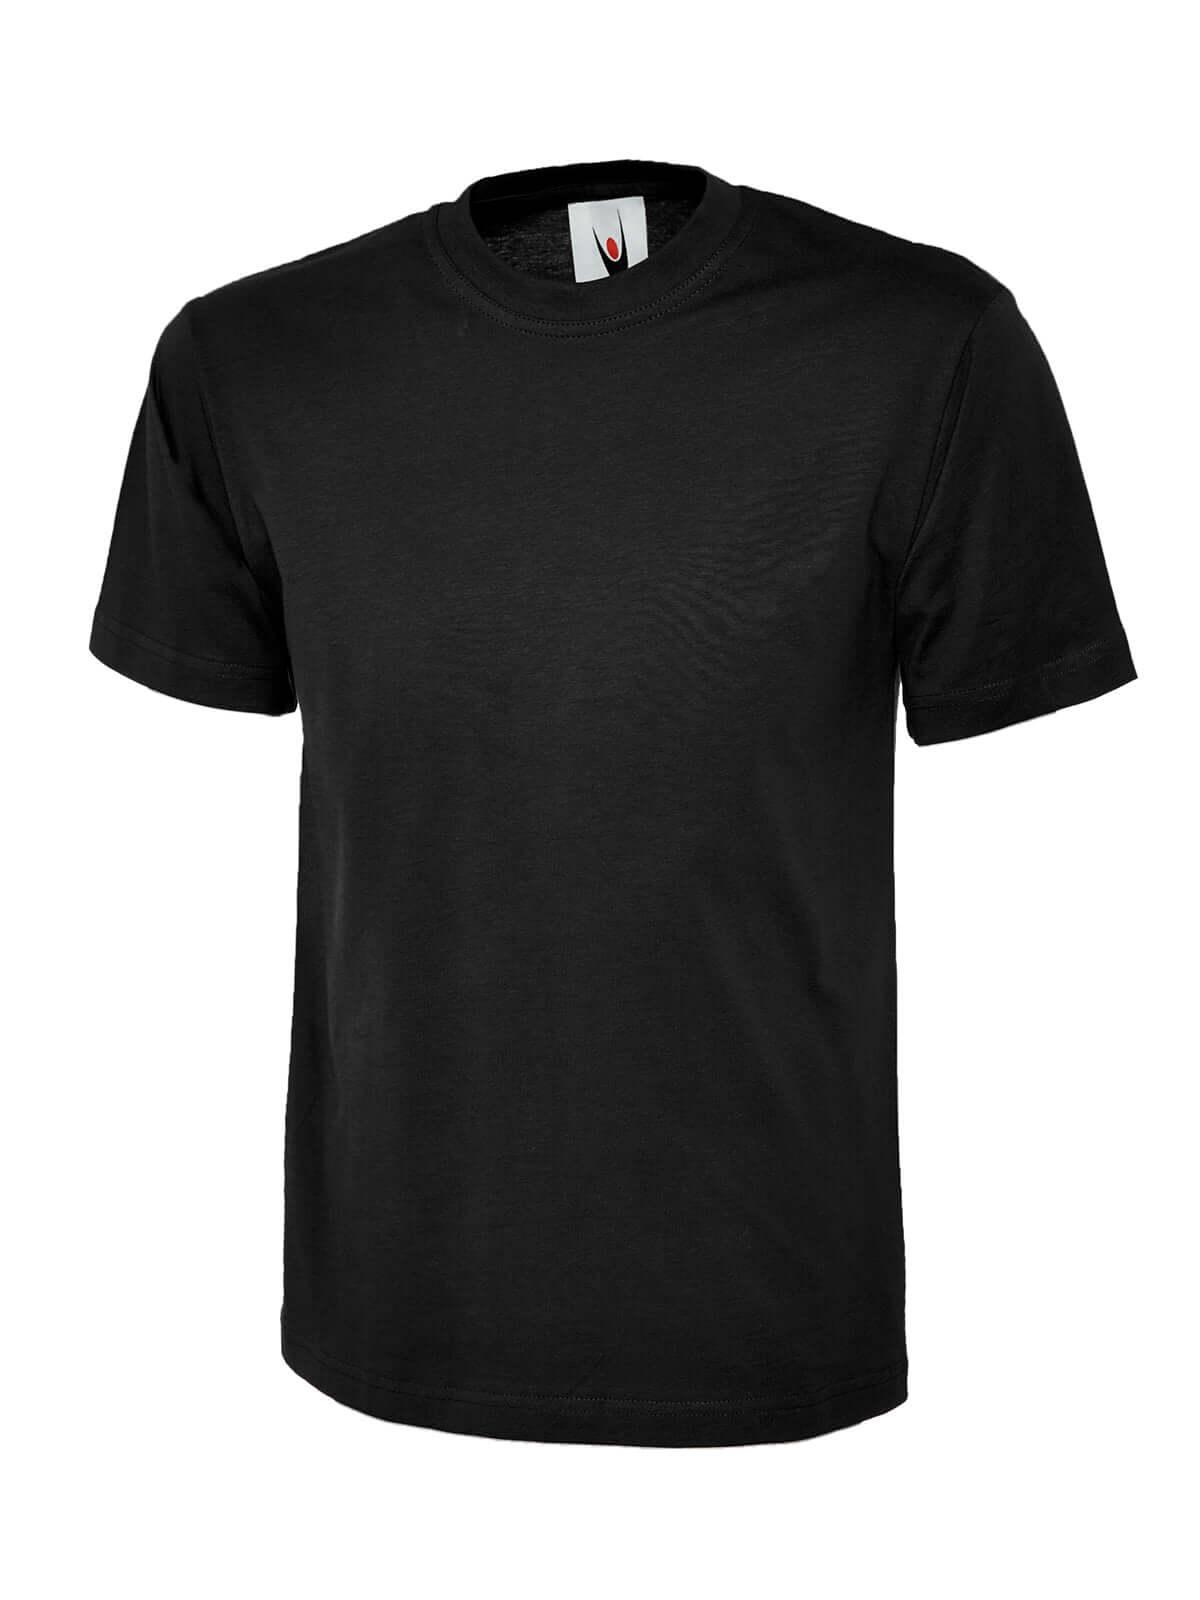 Pegasus Uniform Premium T-shirt - Black